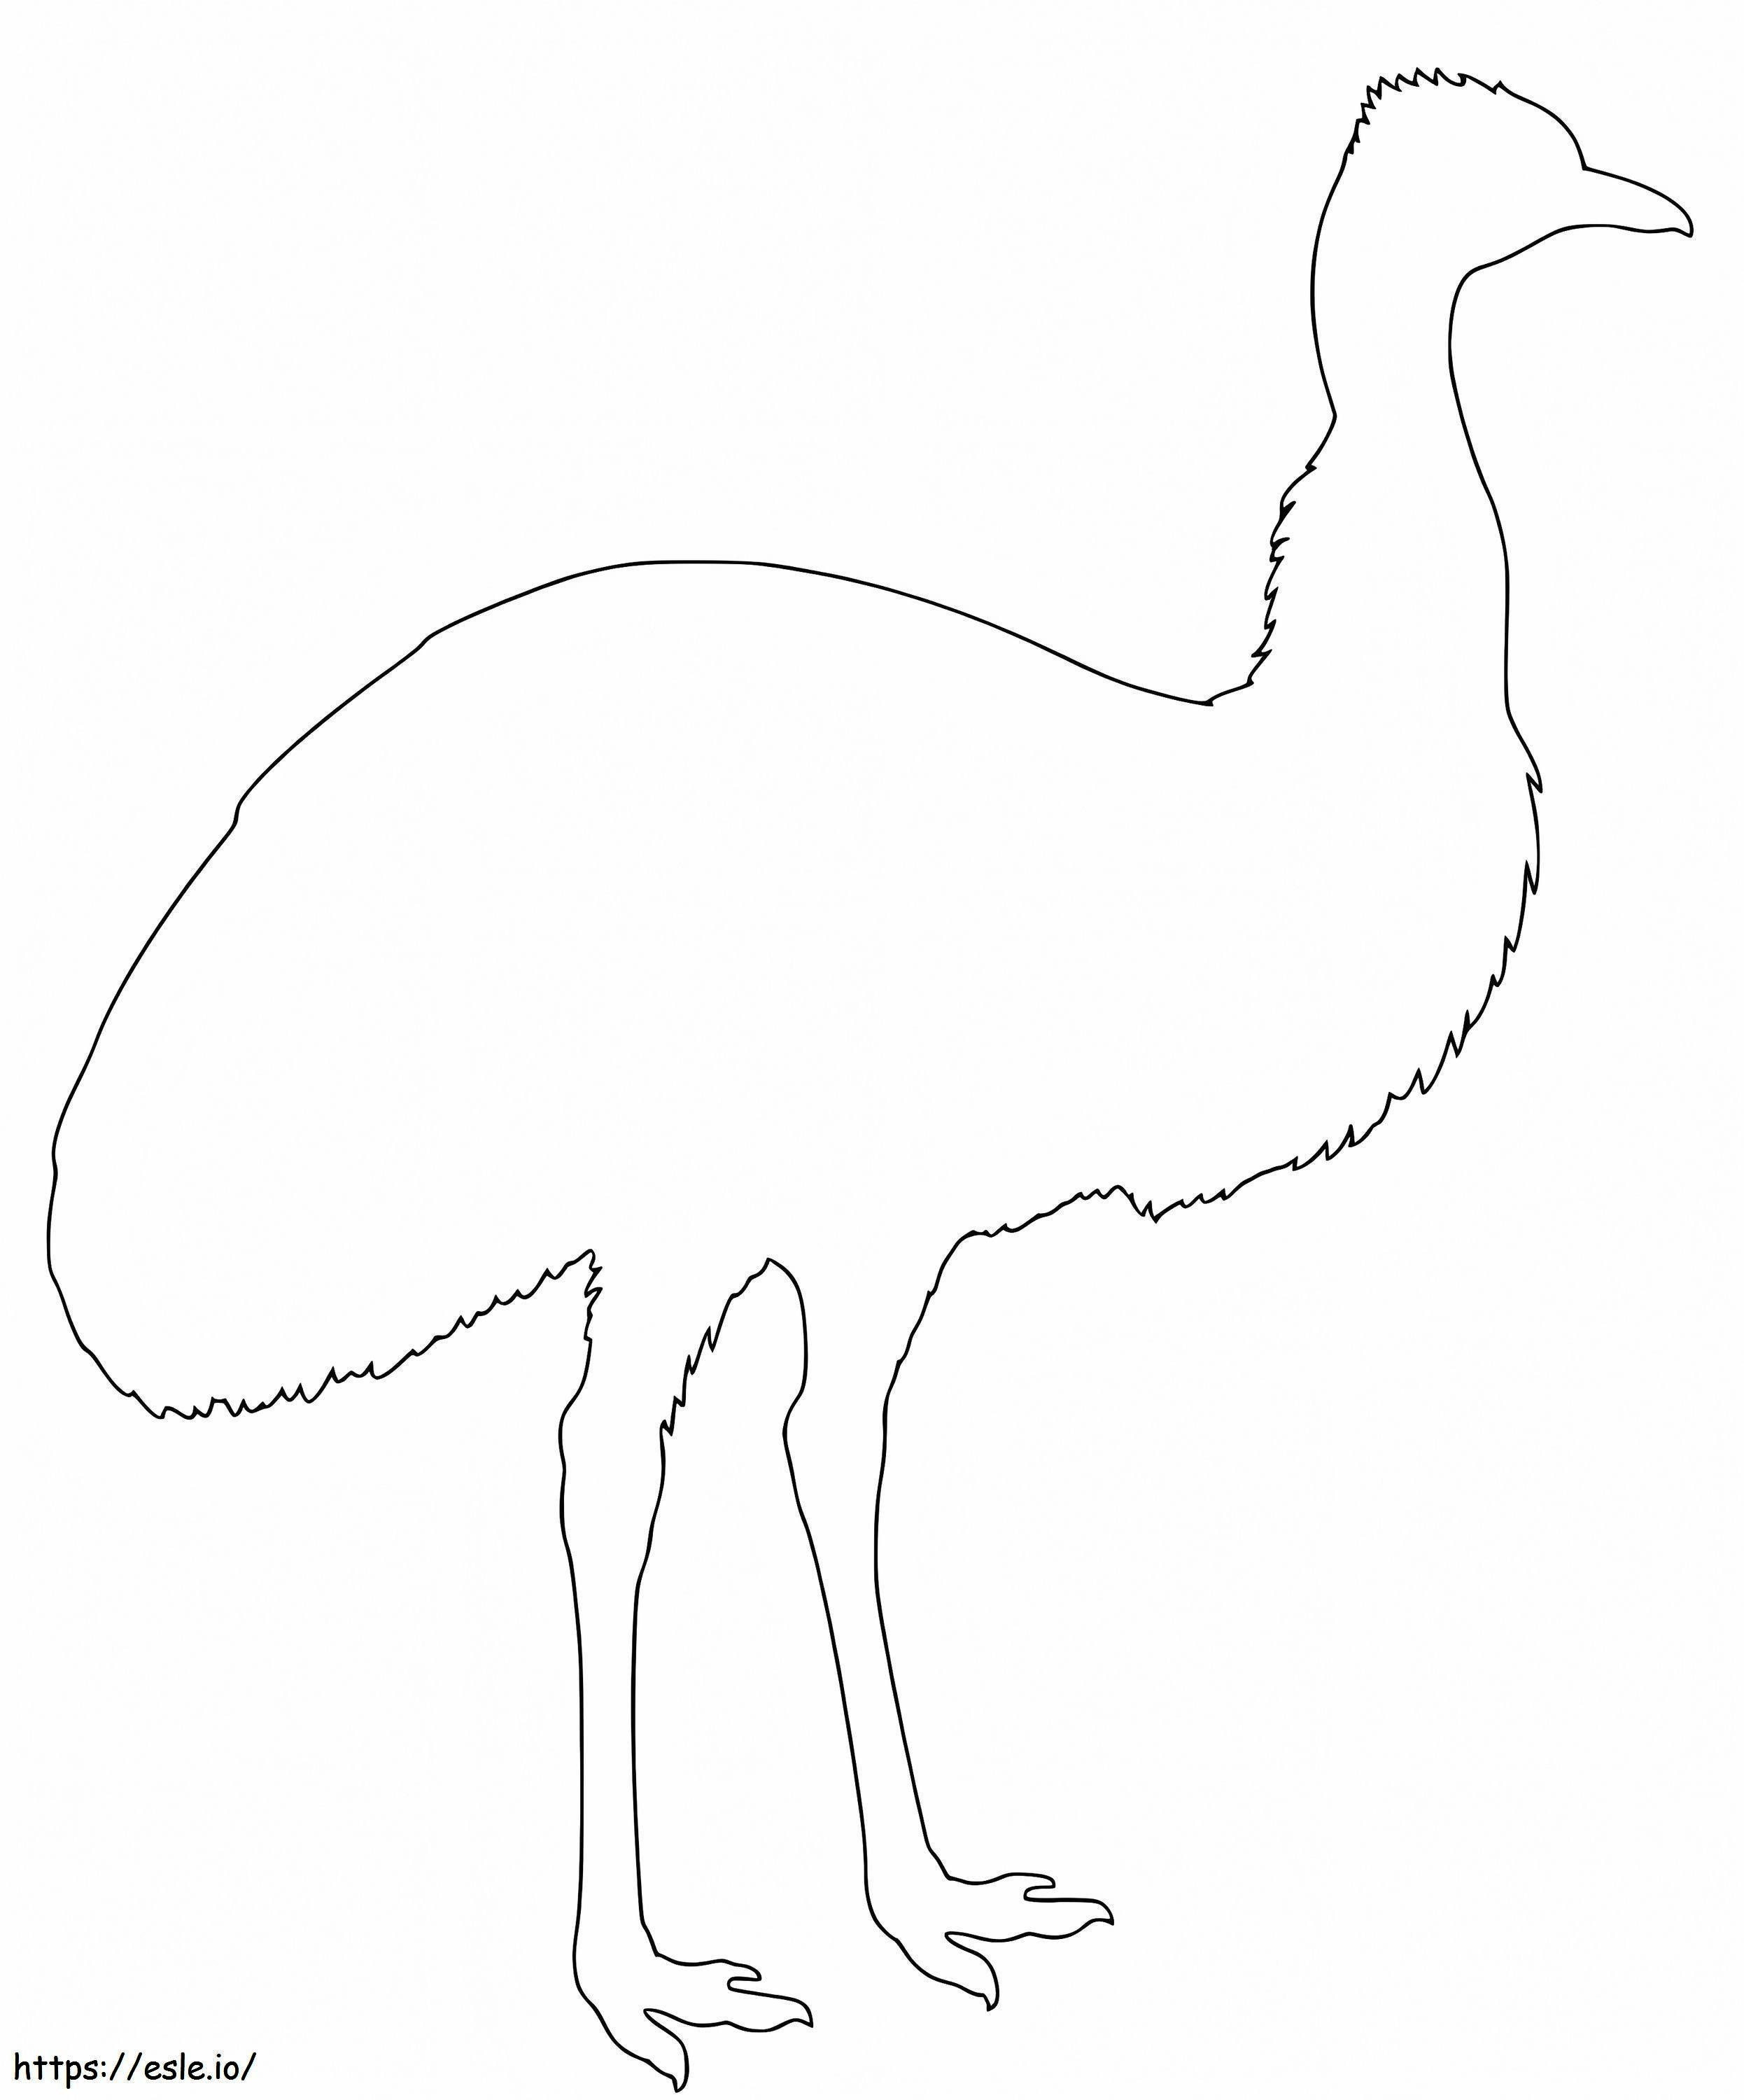 Schema dell'emù da colorare